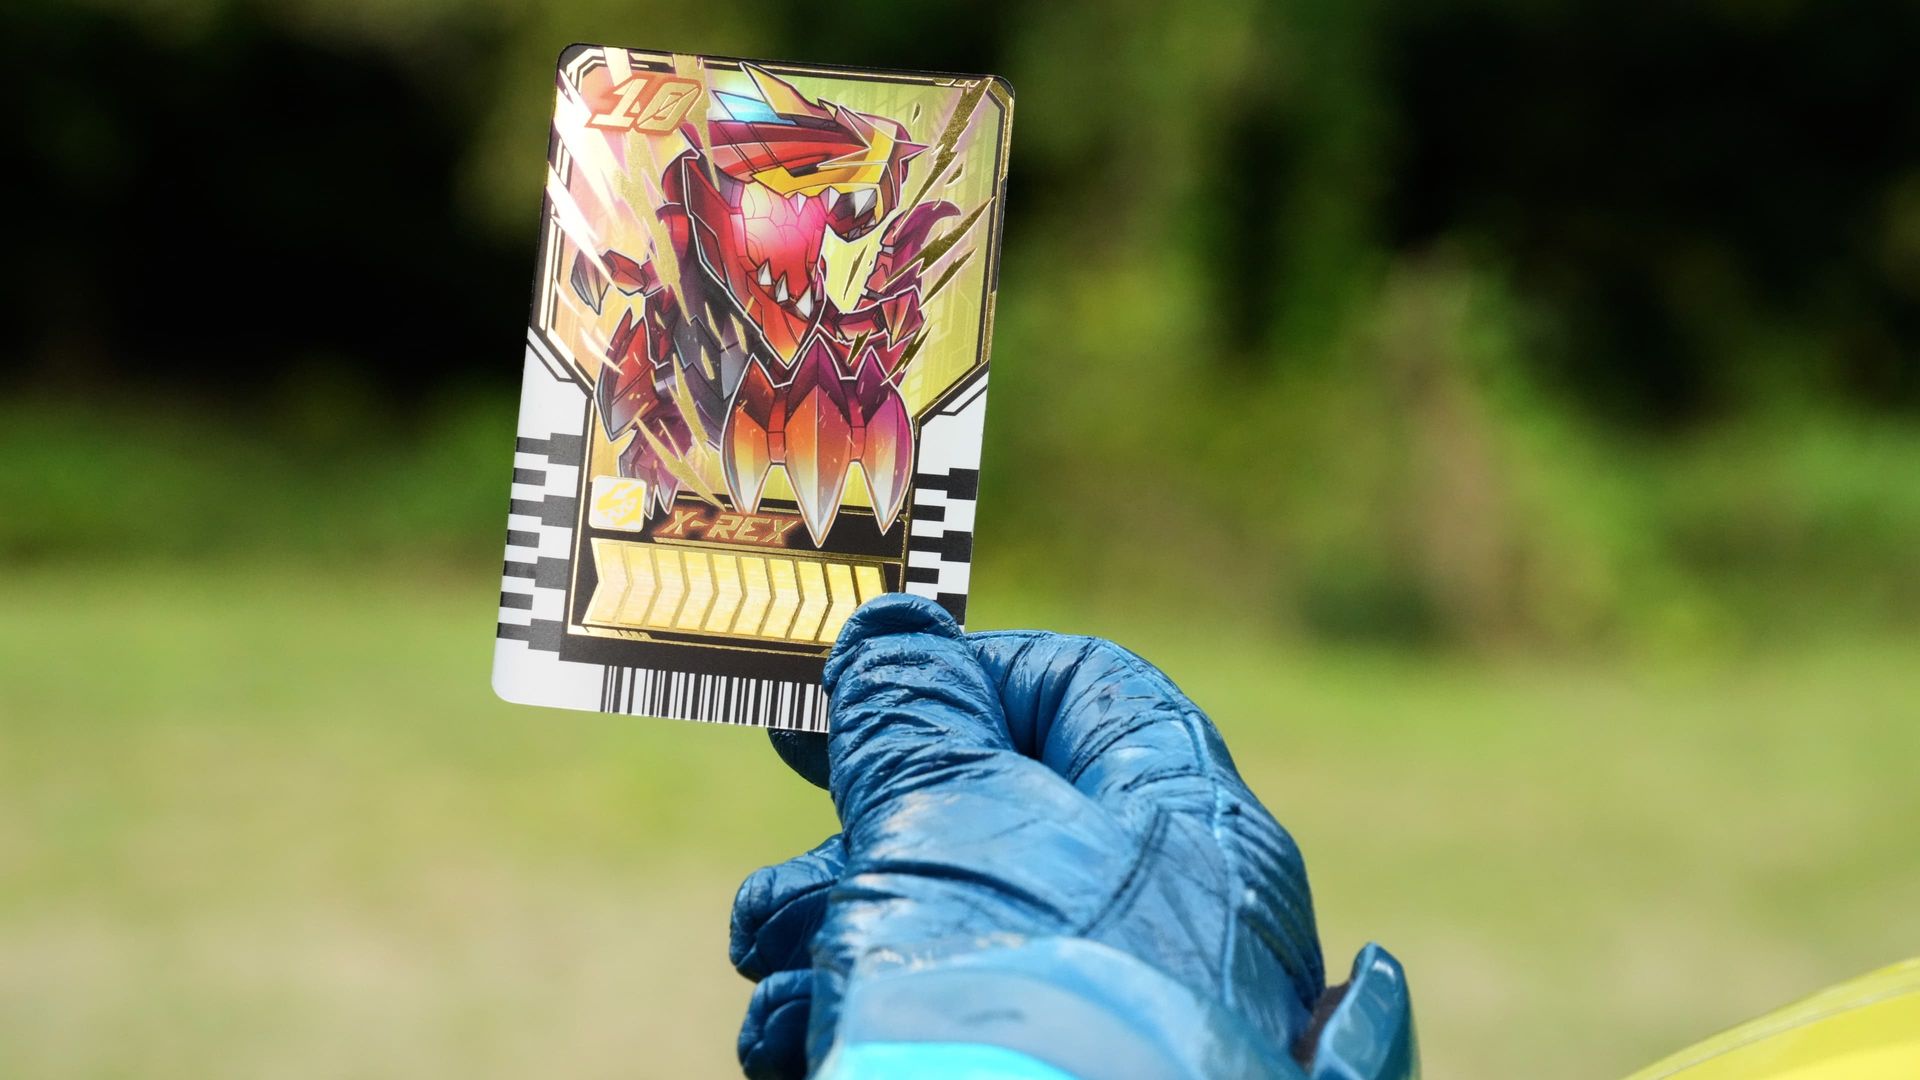 Kamen Rider background